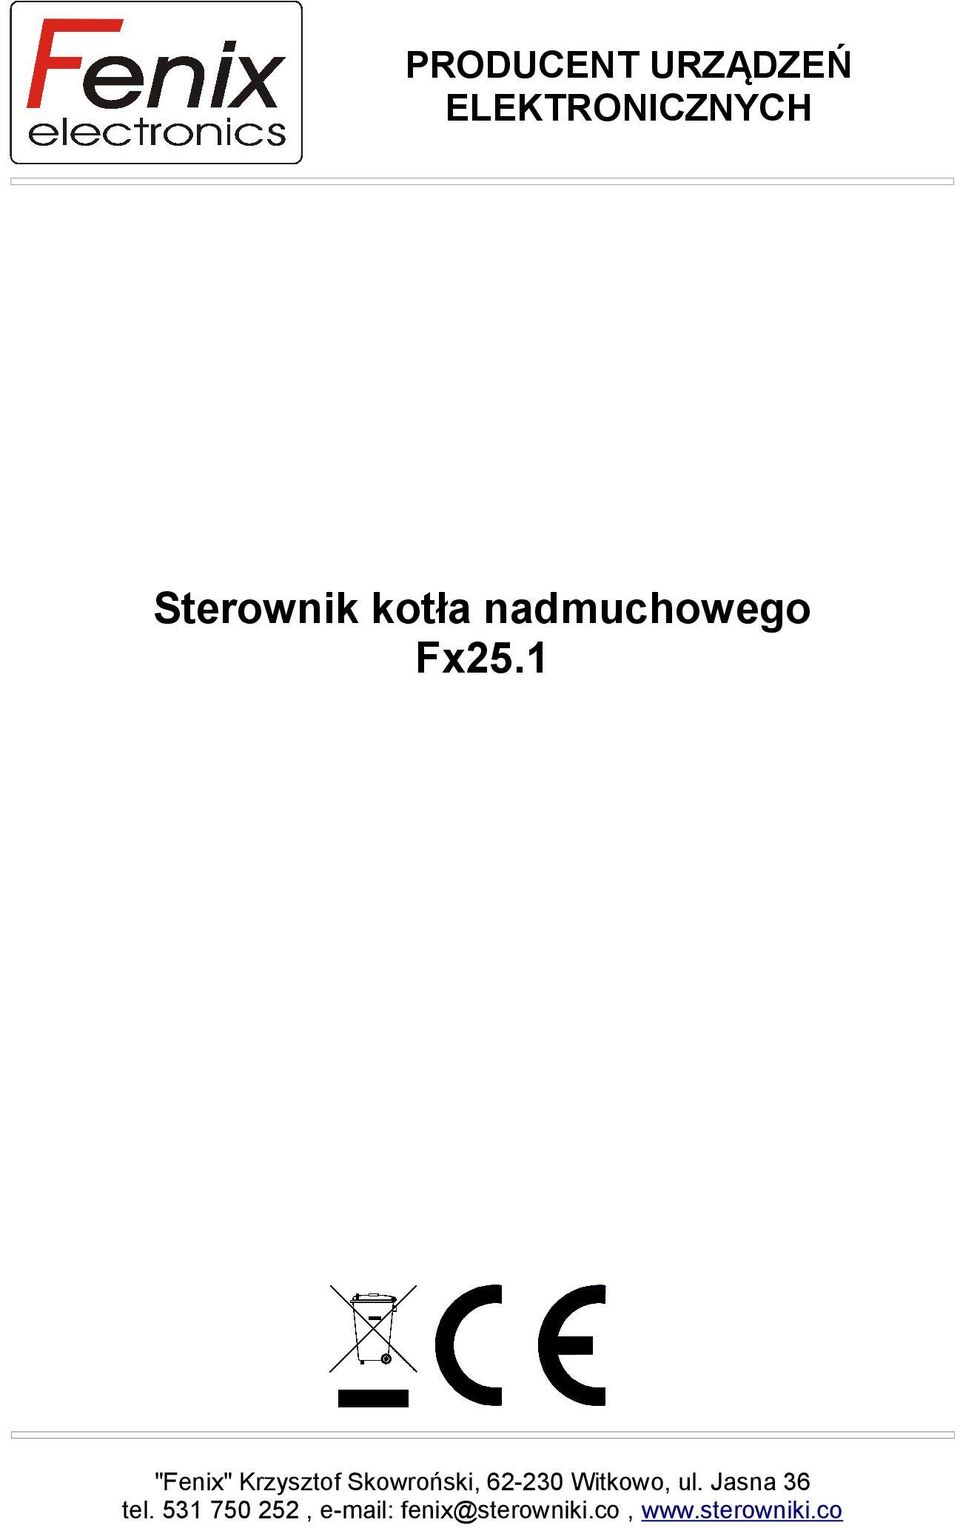 1 "Fenix" Krzysztof Skowroński, 62-230 Witkowo,